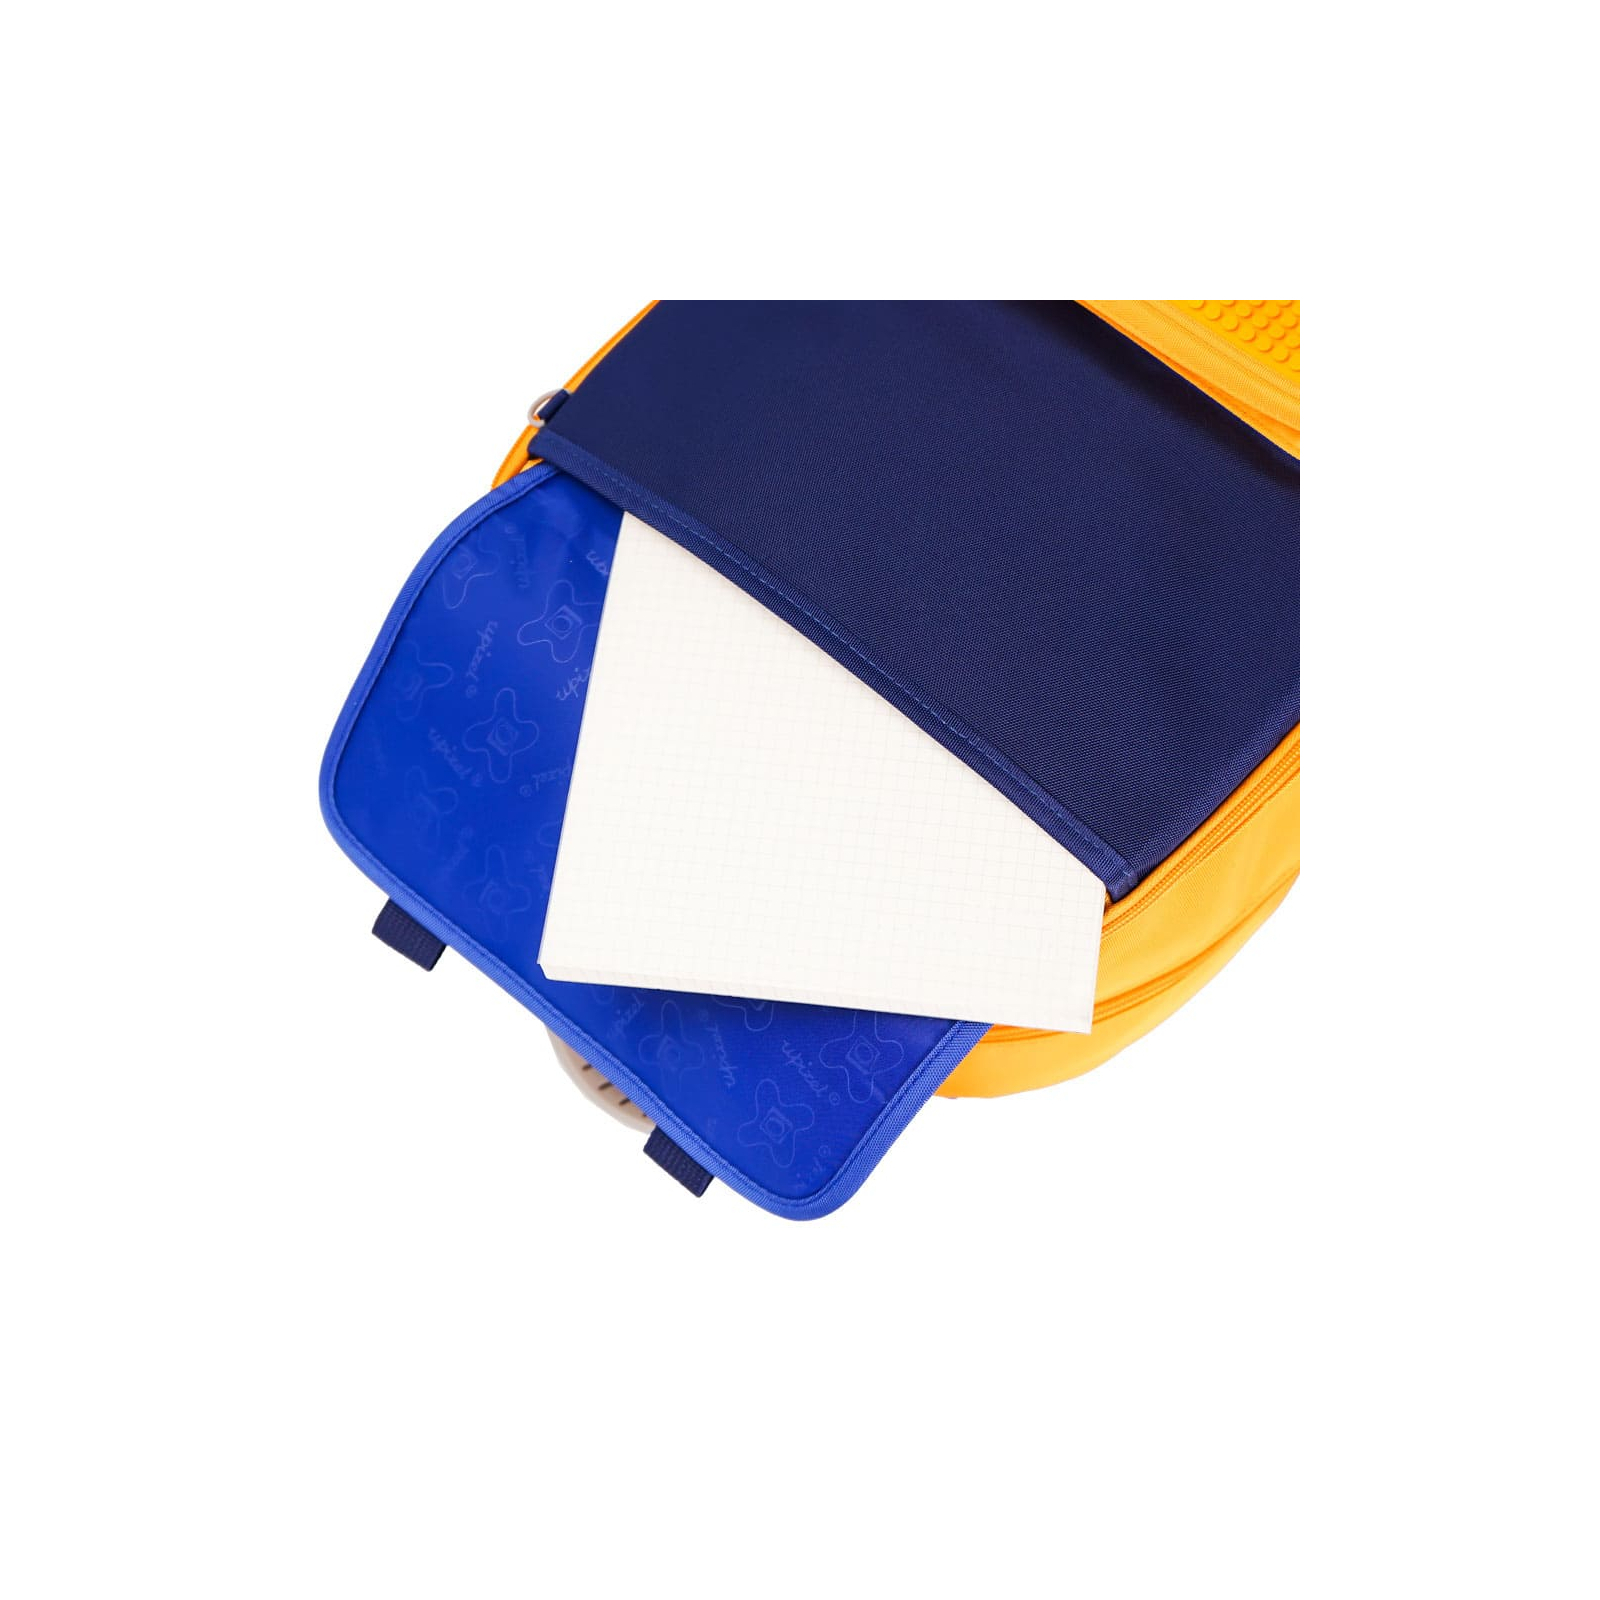 Рюкзак школьный Upixel Dreamer Space School Bag - Сине-желтый (U23-X01-B) изображение 10